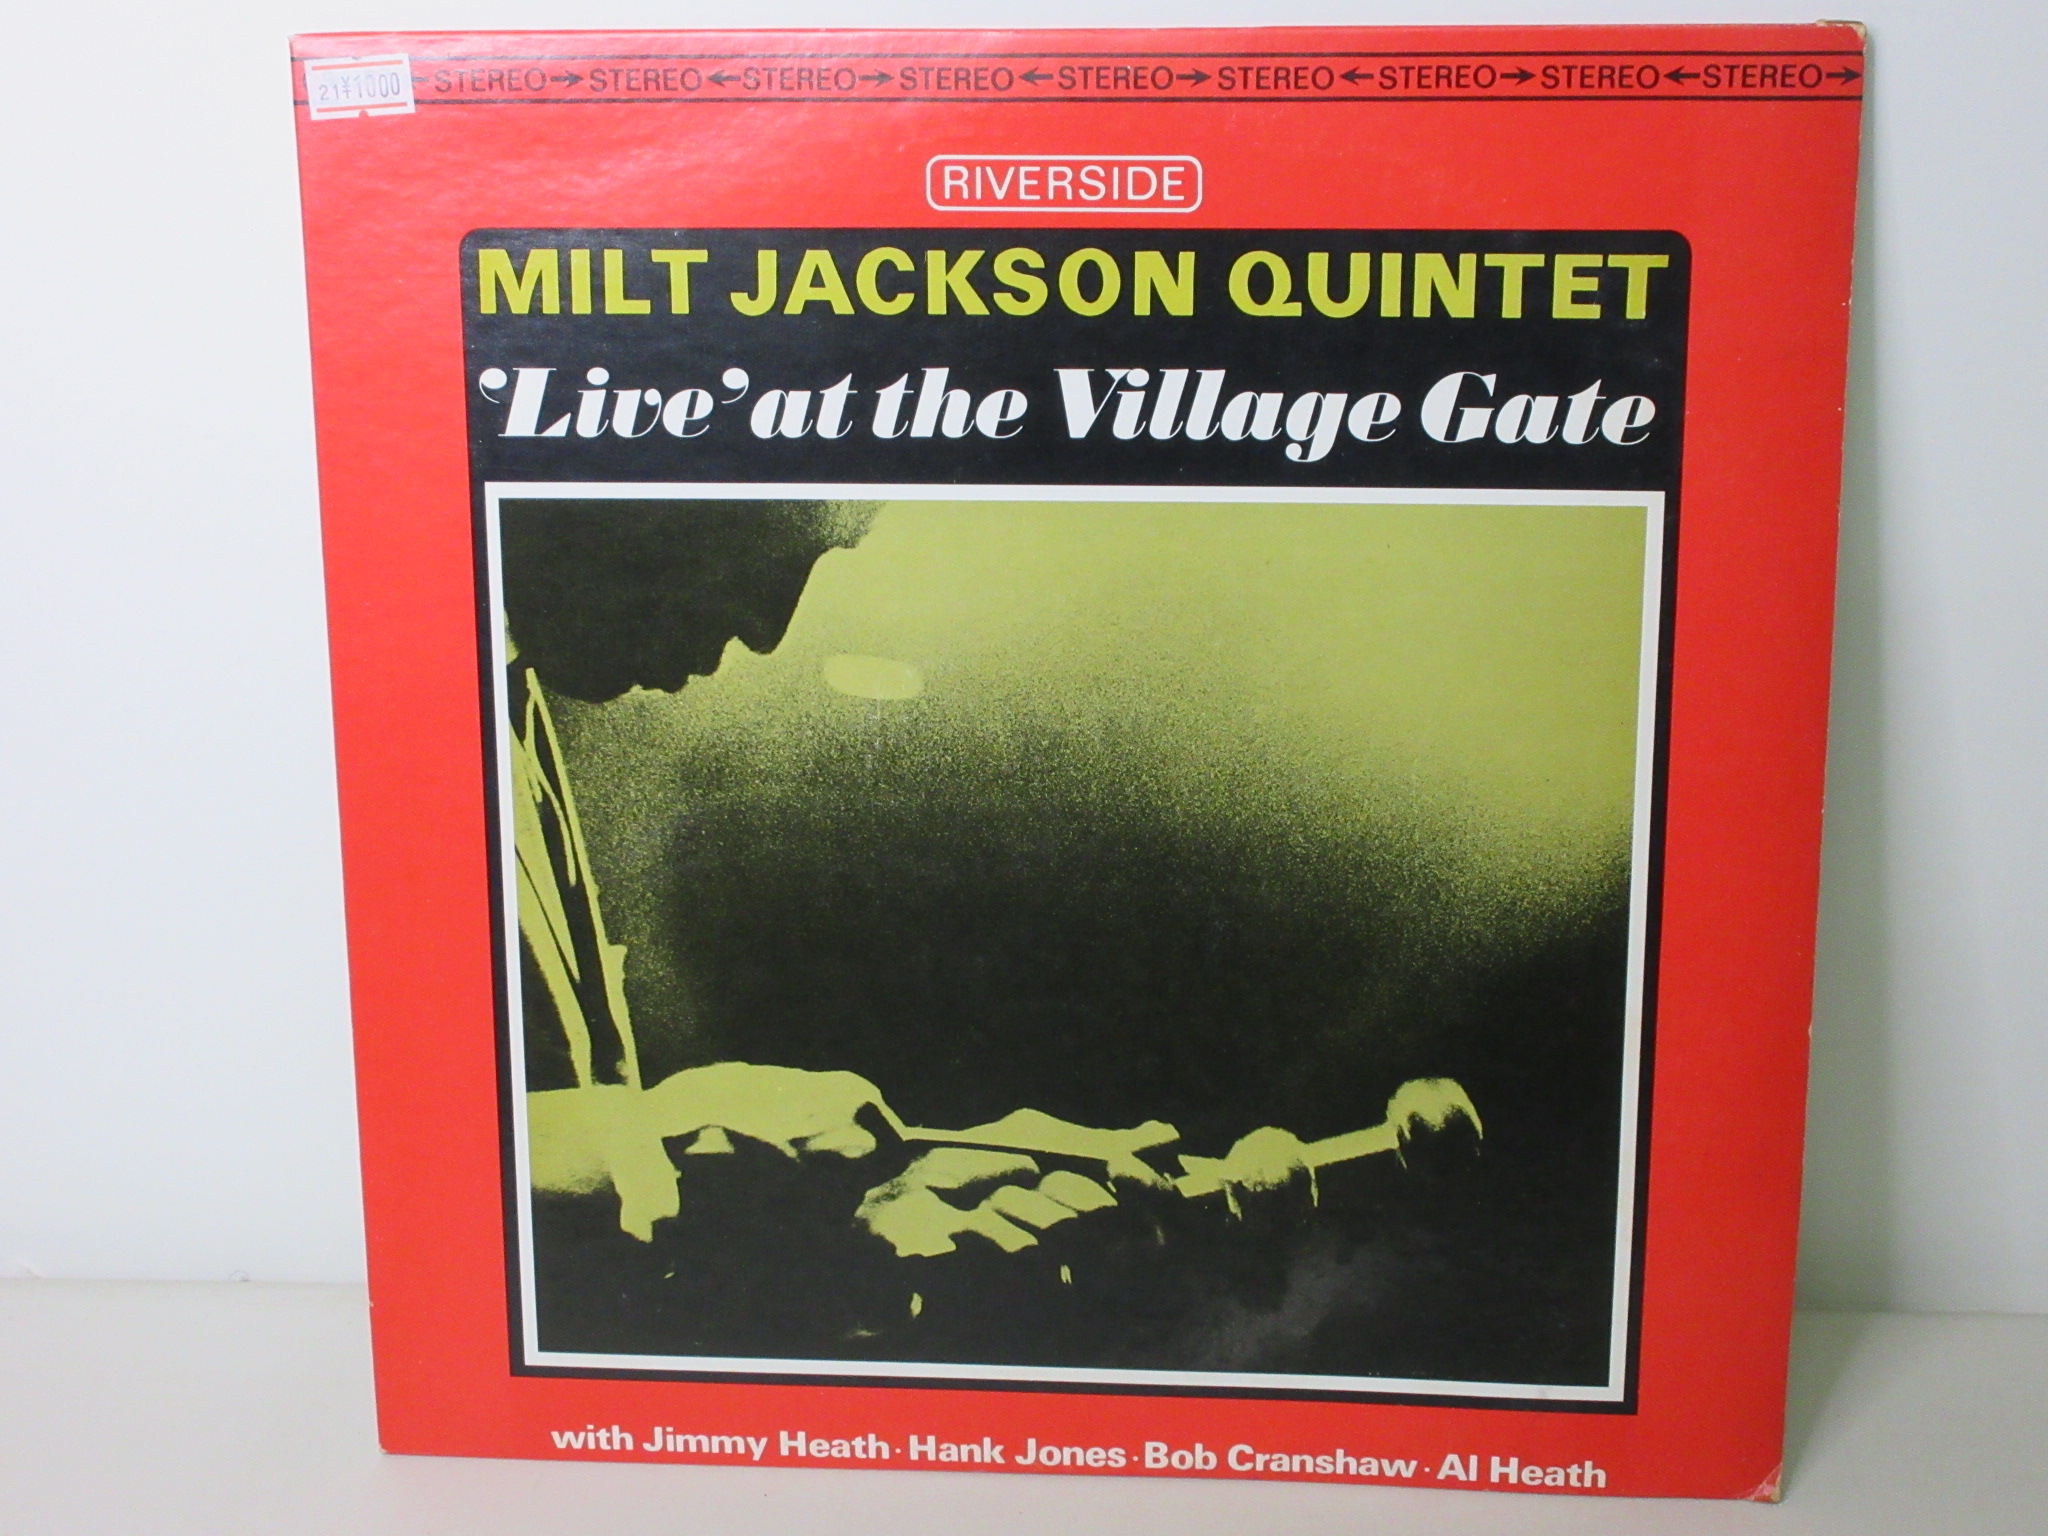 Milt Jackson Quintet - 'Live' At The Village Gate [MJ-6286]